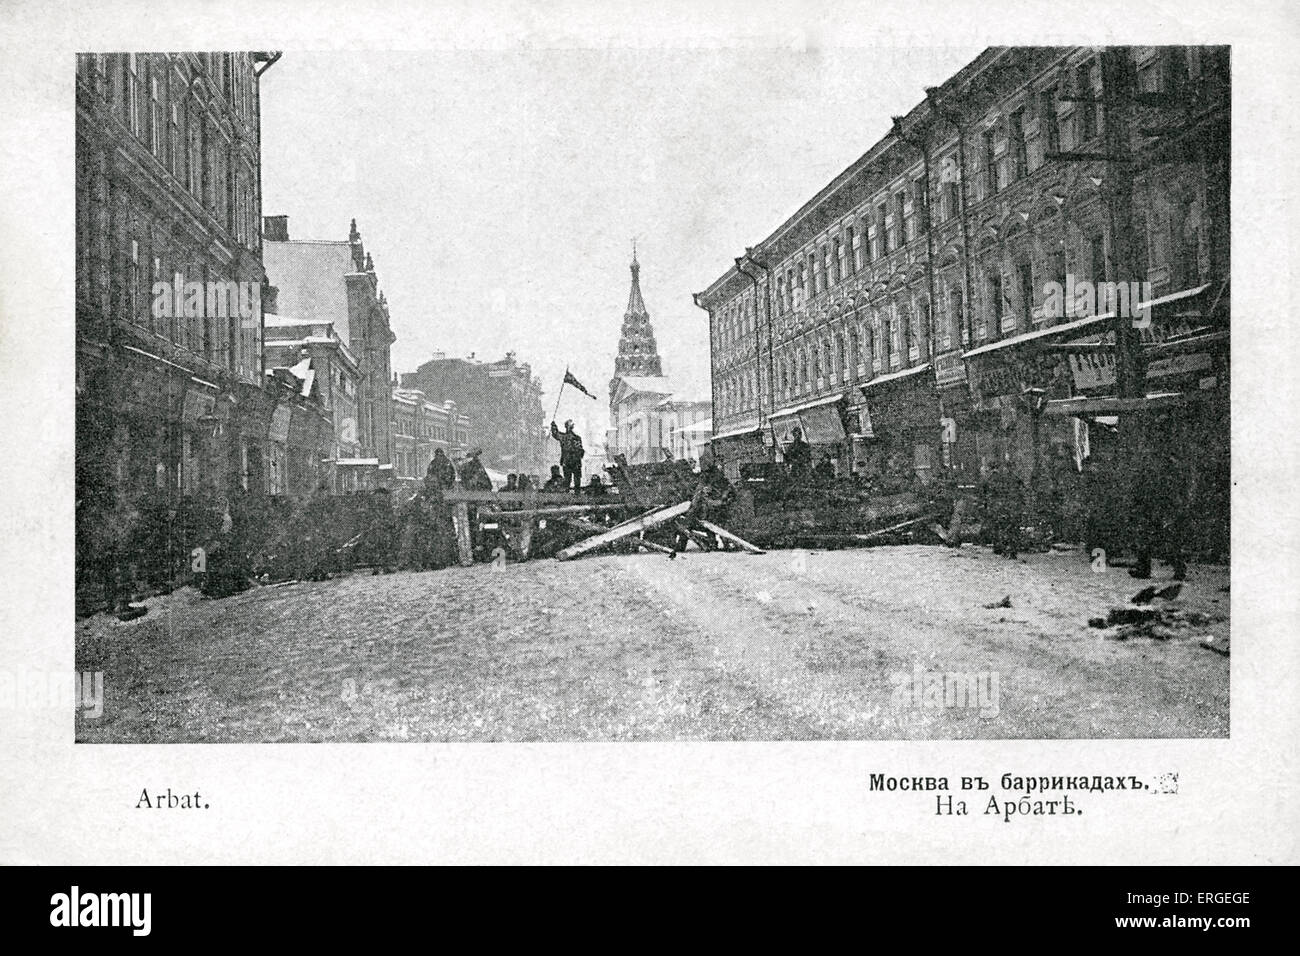 Des barricades de rue au cours de 1905 Révolution Russe - Arbat, Moscou. Vague d'agitation politique et sociale qui se propagent par Banque D'Images